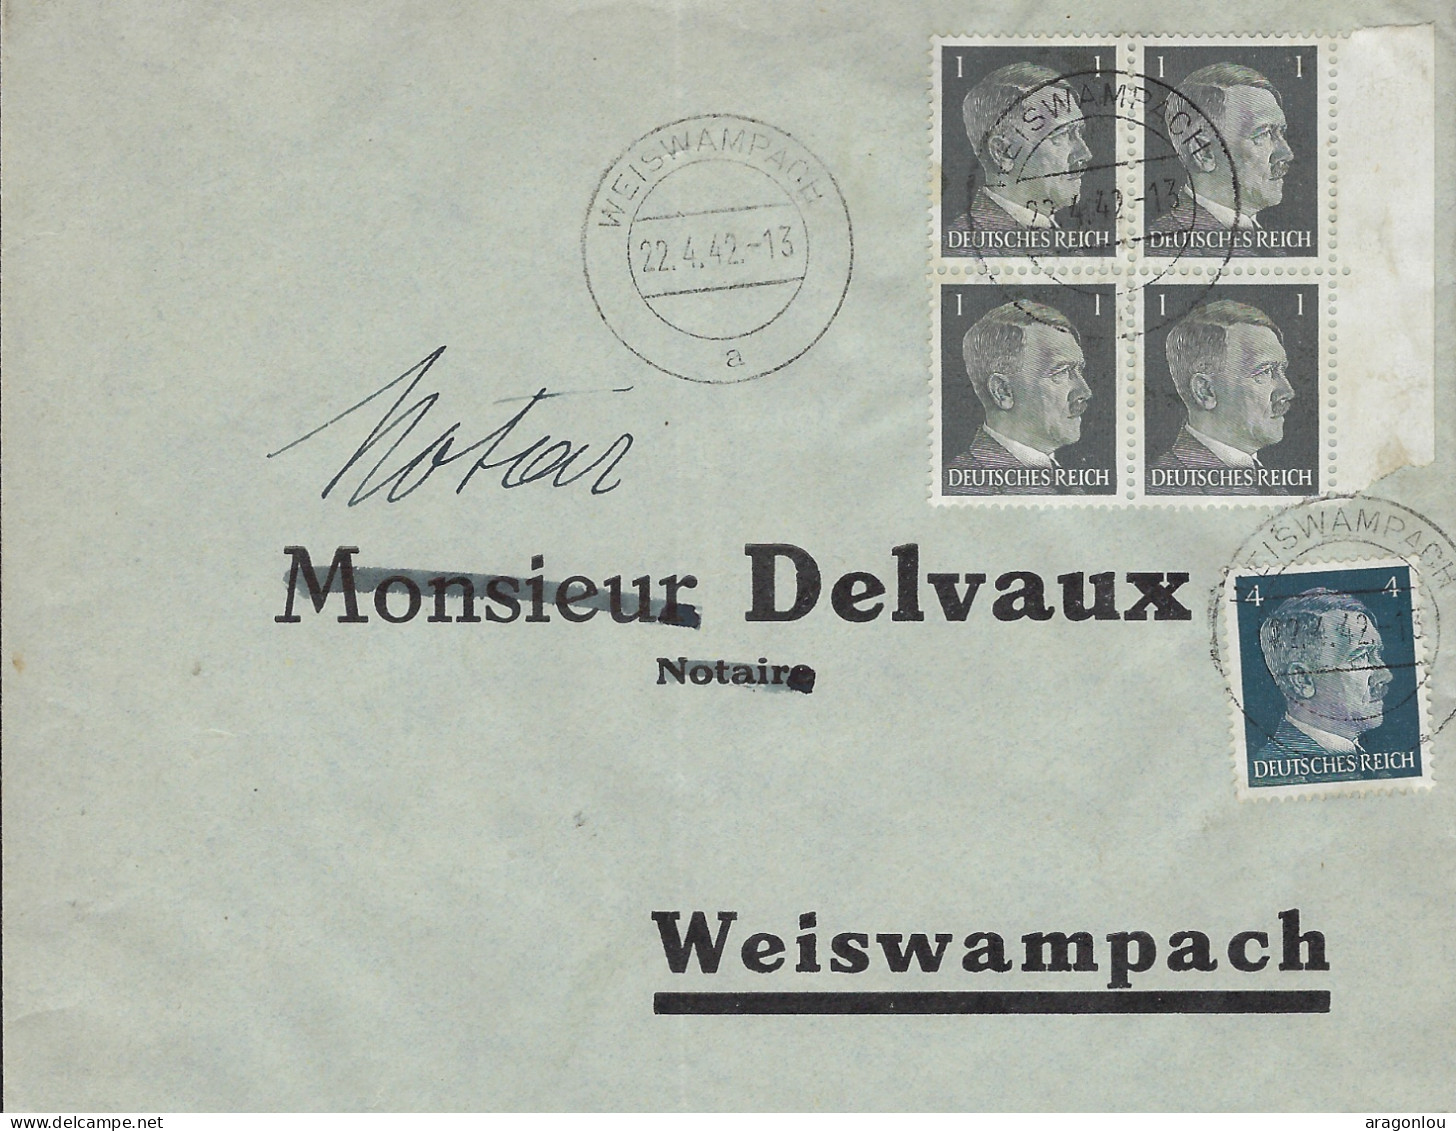 Luxembourg - Luxemburg - Lettre    1942   Occupation - Adressiert An  Notar Delvaux , Weiswampach - 1940-1944 Deutsche Besatzung